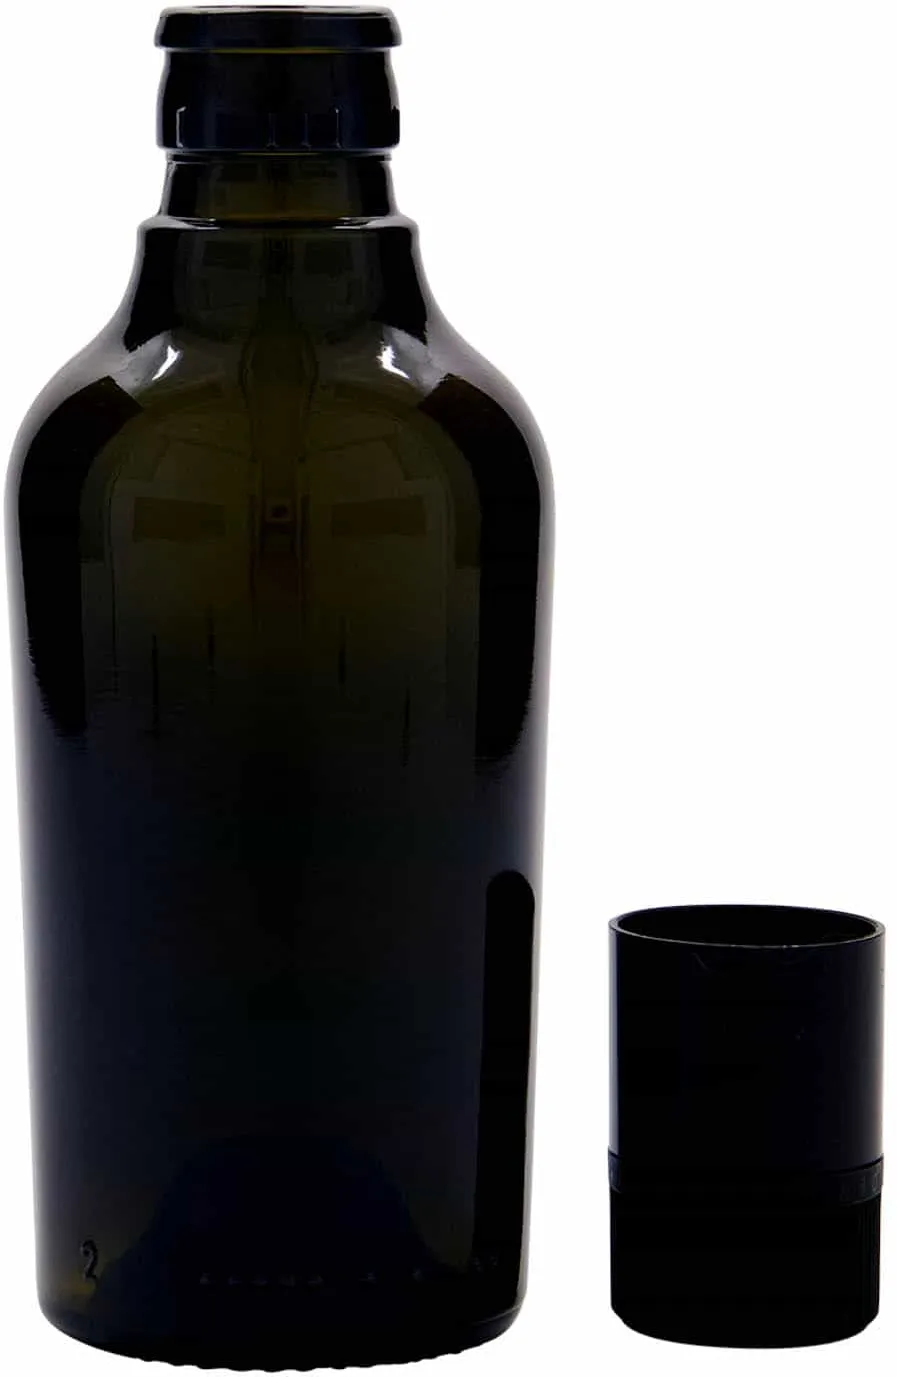 250 ml Bottiglia olio/aceto 'Oleum', vetro, verde antico, imboccatura: DOP